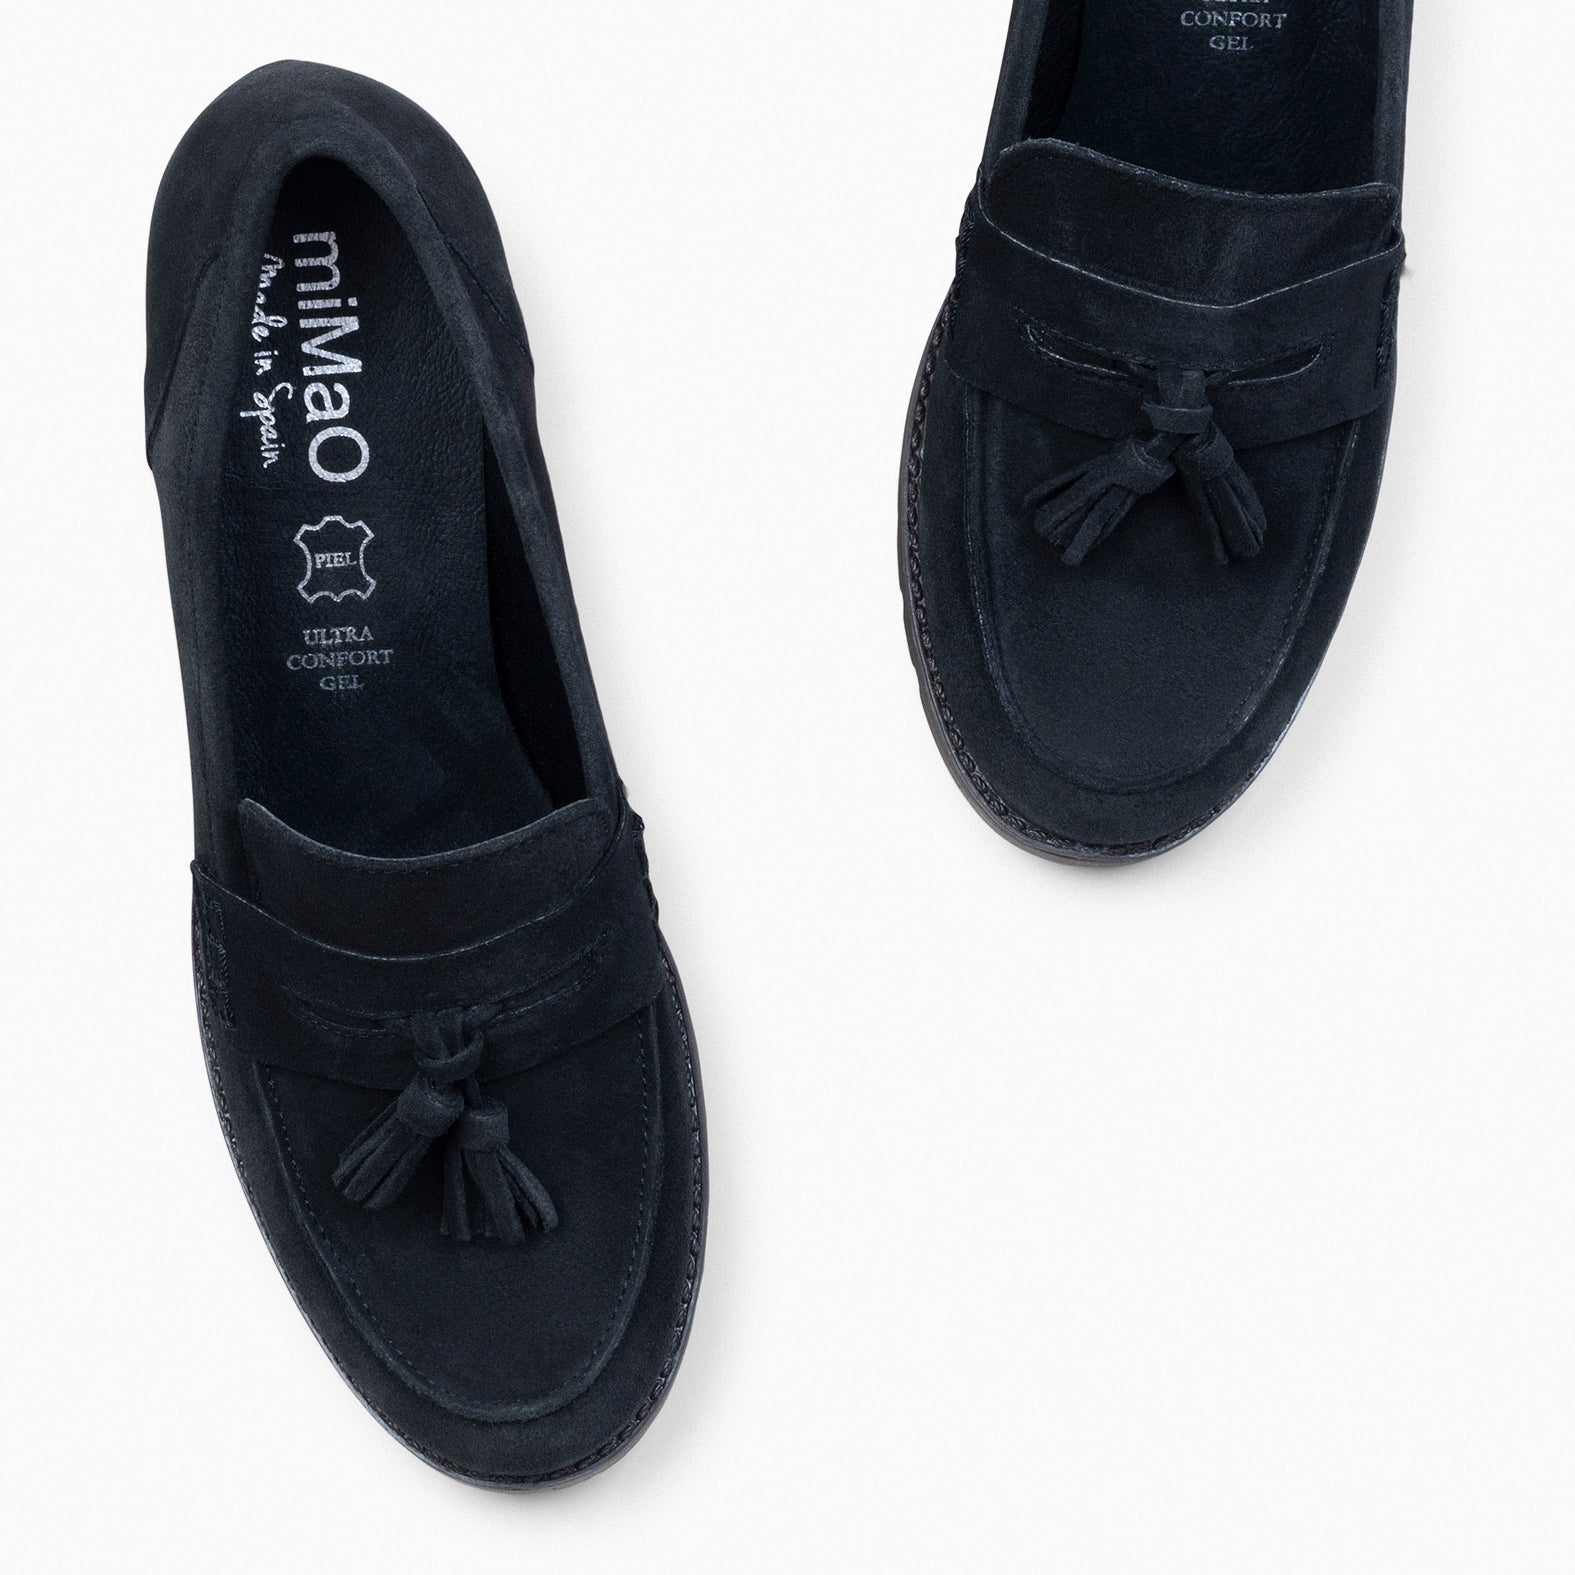 TREND S - BLACK mid heel moccasins